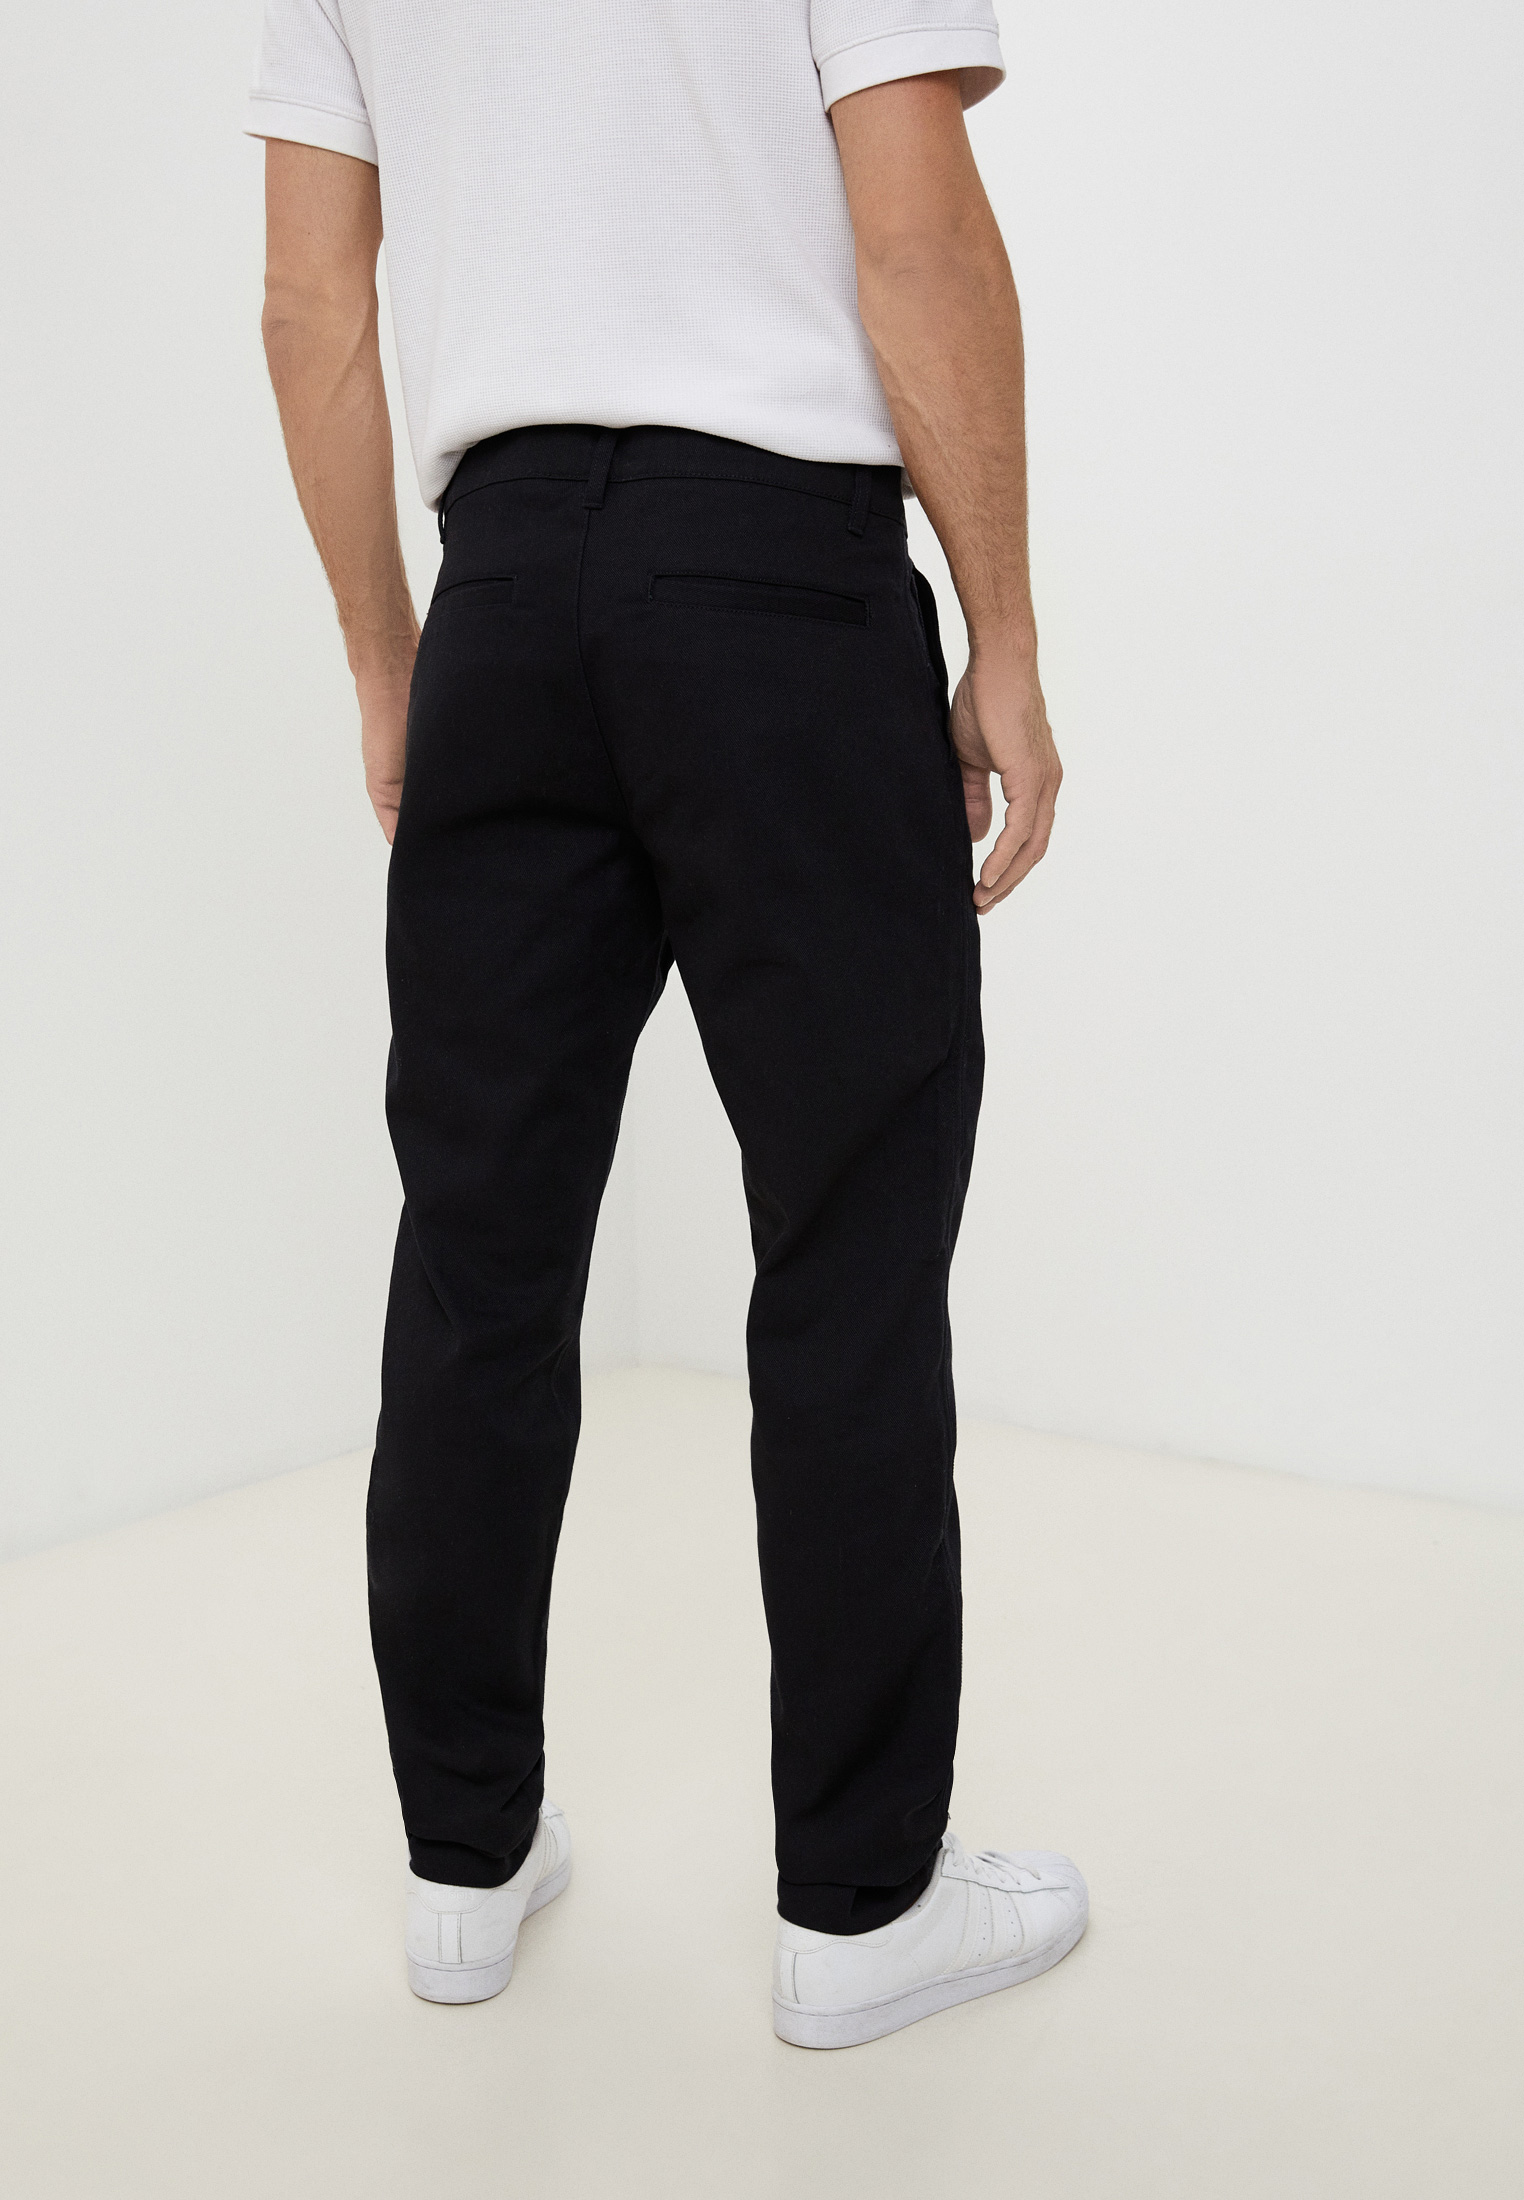 Мужские спортивные брюки Adidas Originals (Адидас Ориджиналс) H33478: изображение 3